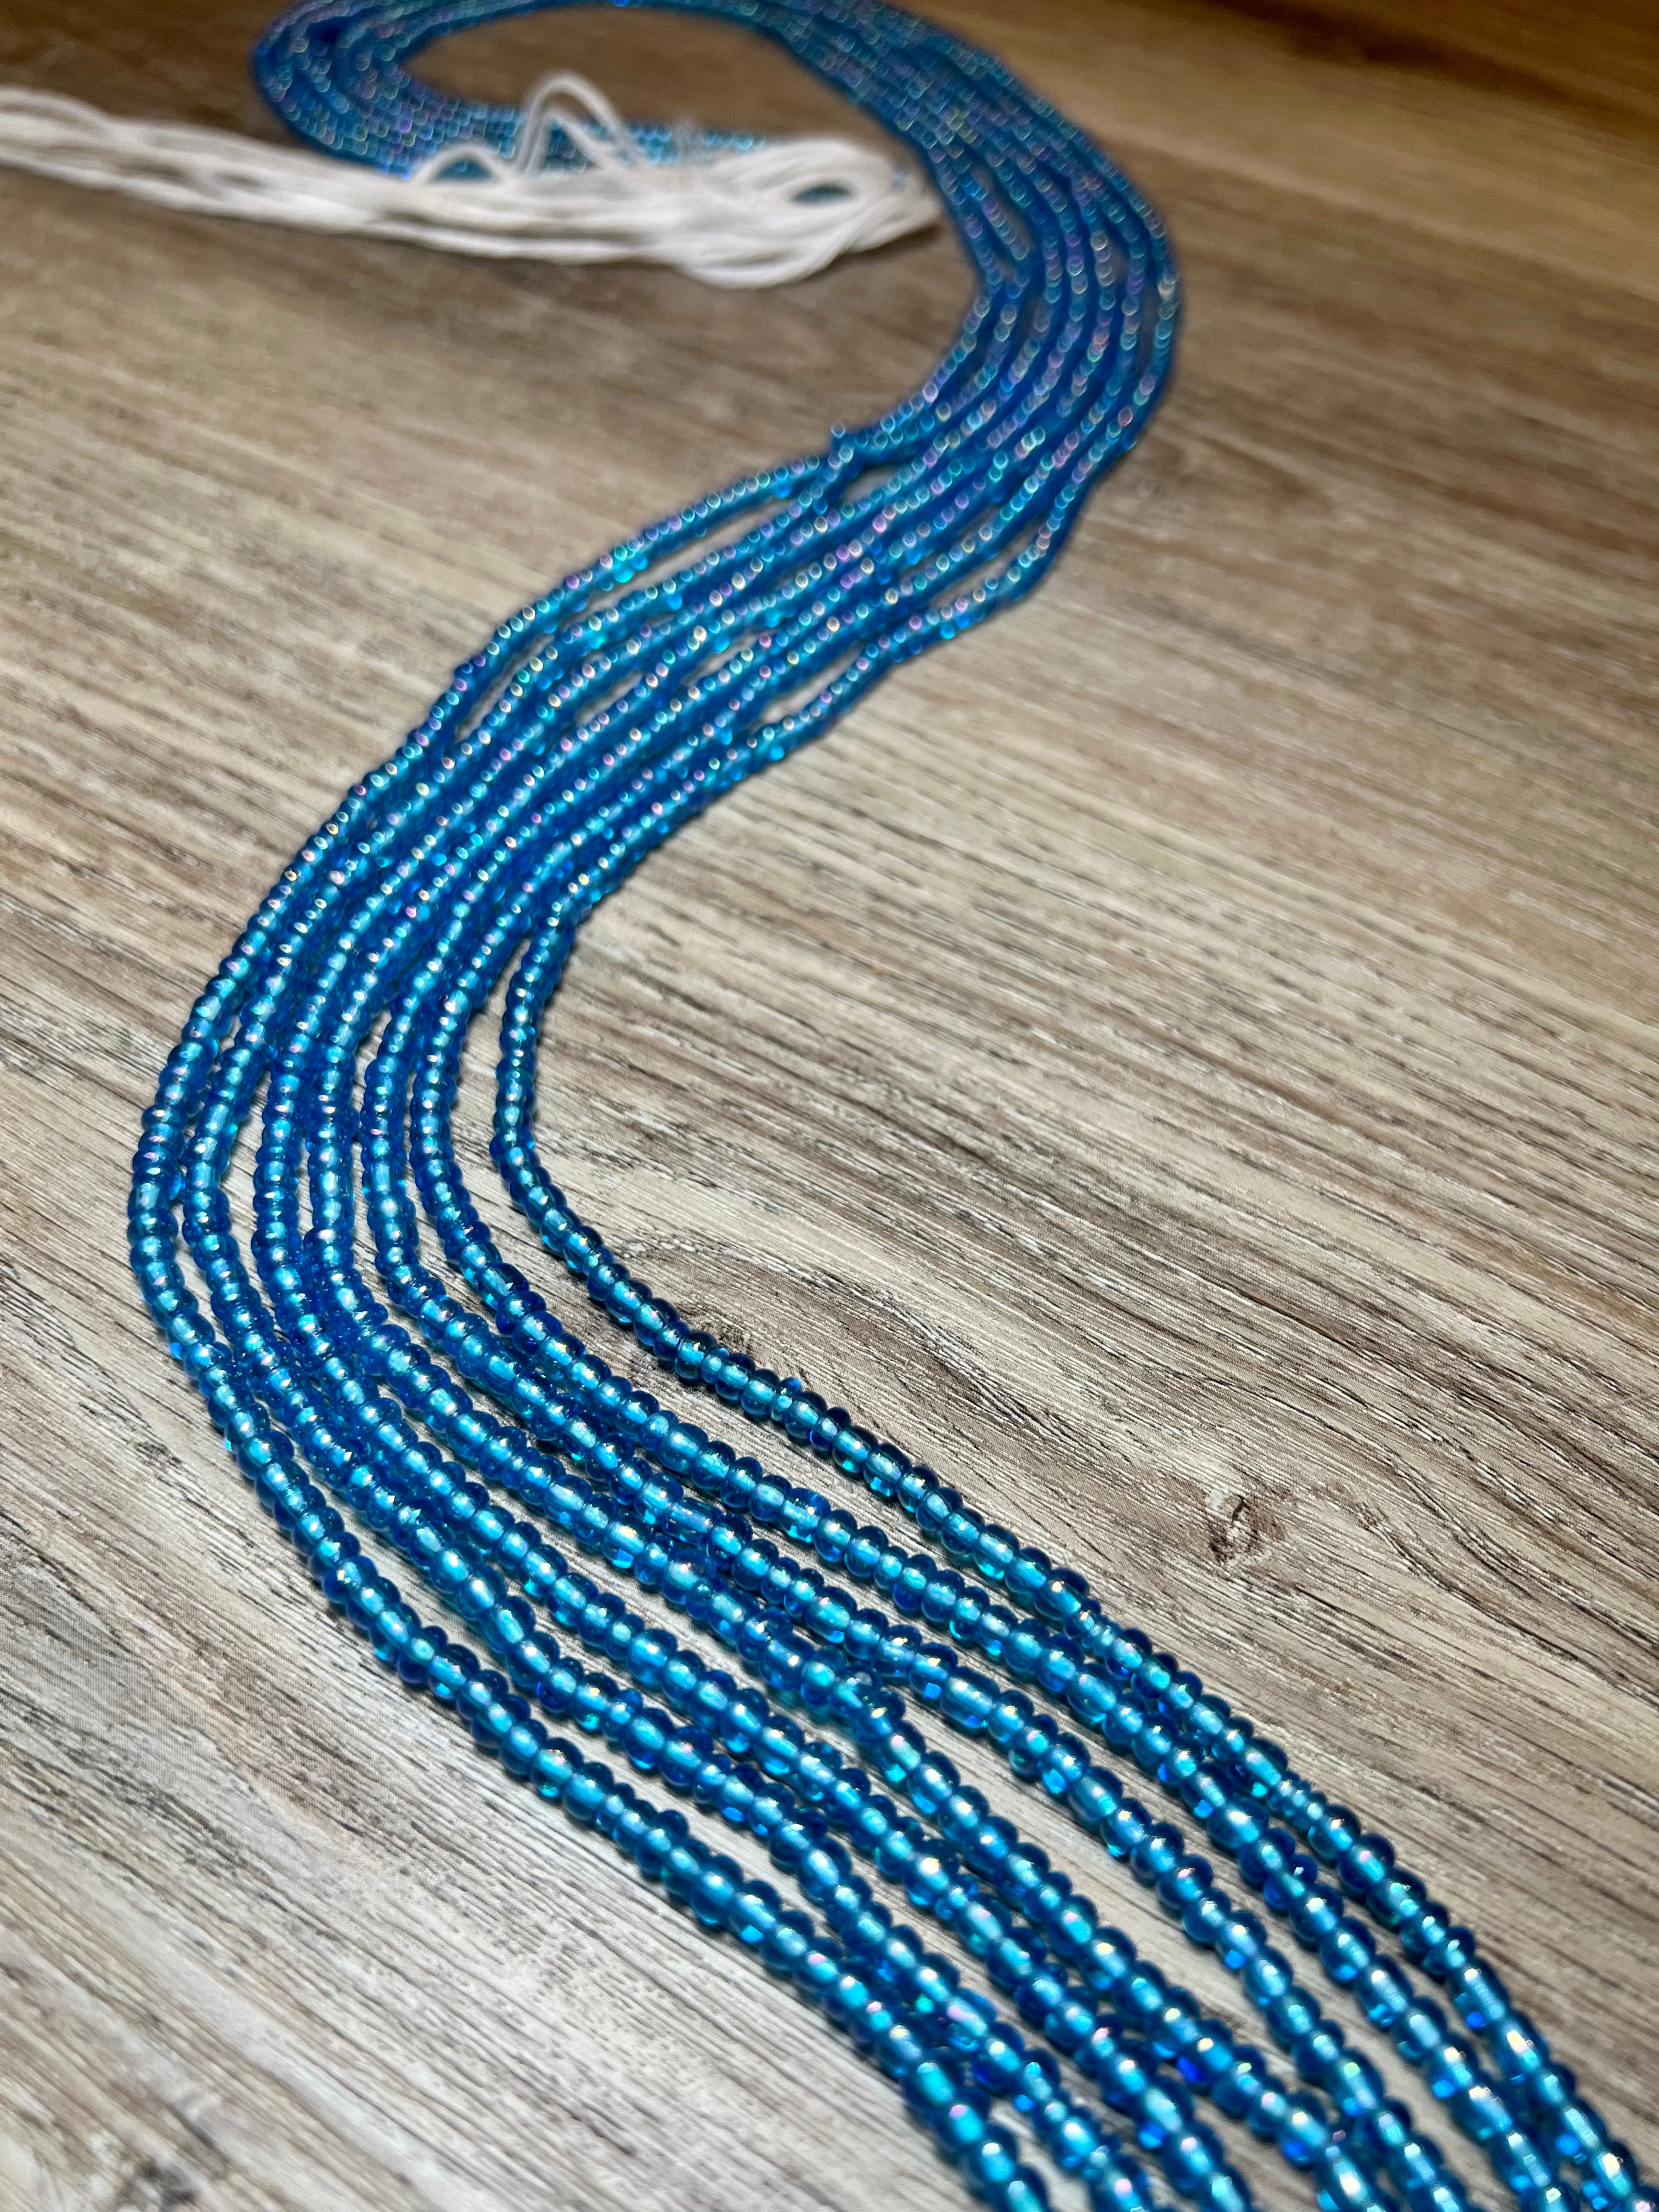 Blue Hens waist beads